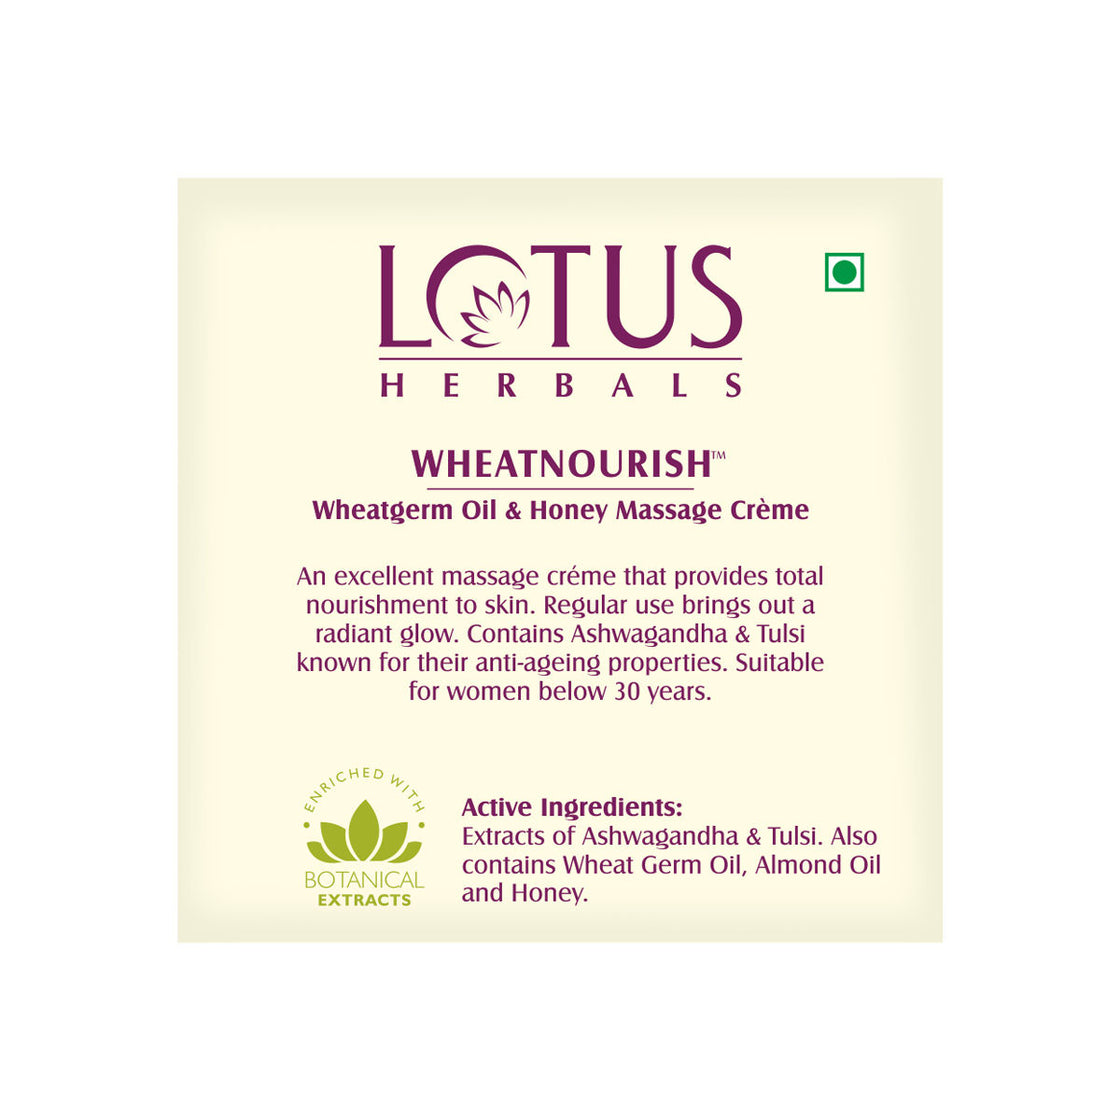 Lotus Herbals Wheatnourish Wheatgerm Oil & Honey Massage Cream (50g)